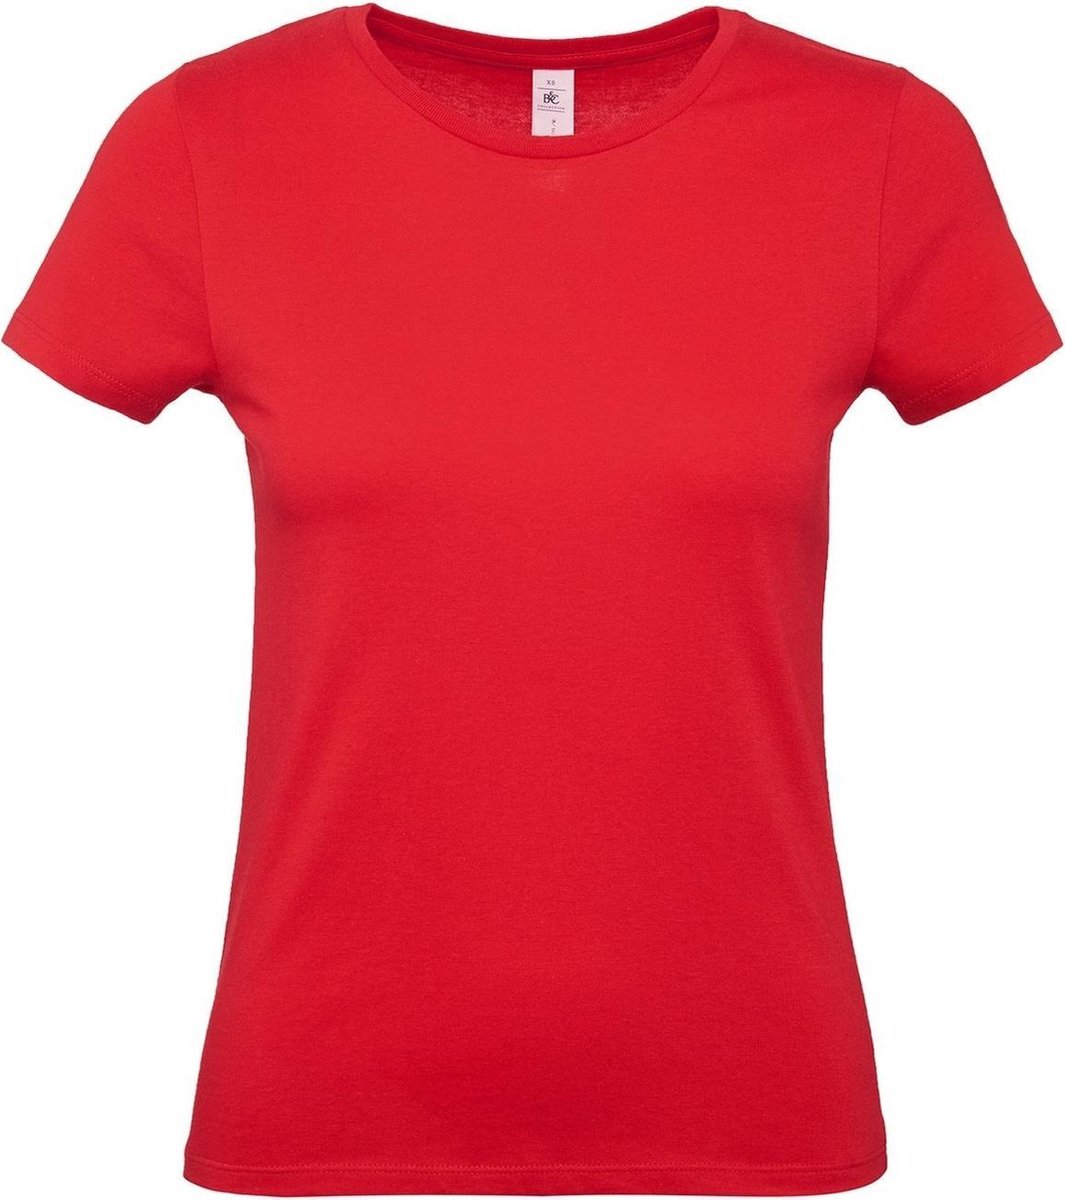 Set van 2x stuks rood basic t-shirts met ronde hals voor dames - katoen - 145 grams - rode shirts / kleding, maat: XL (42)